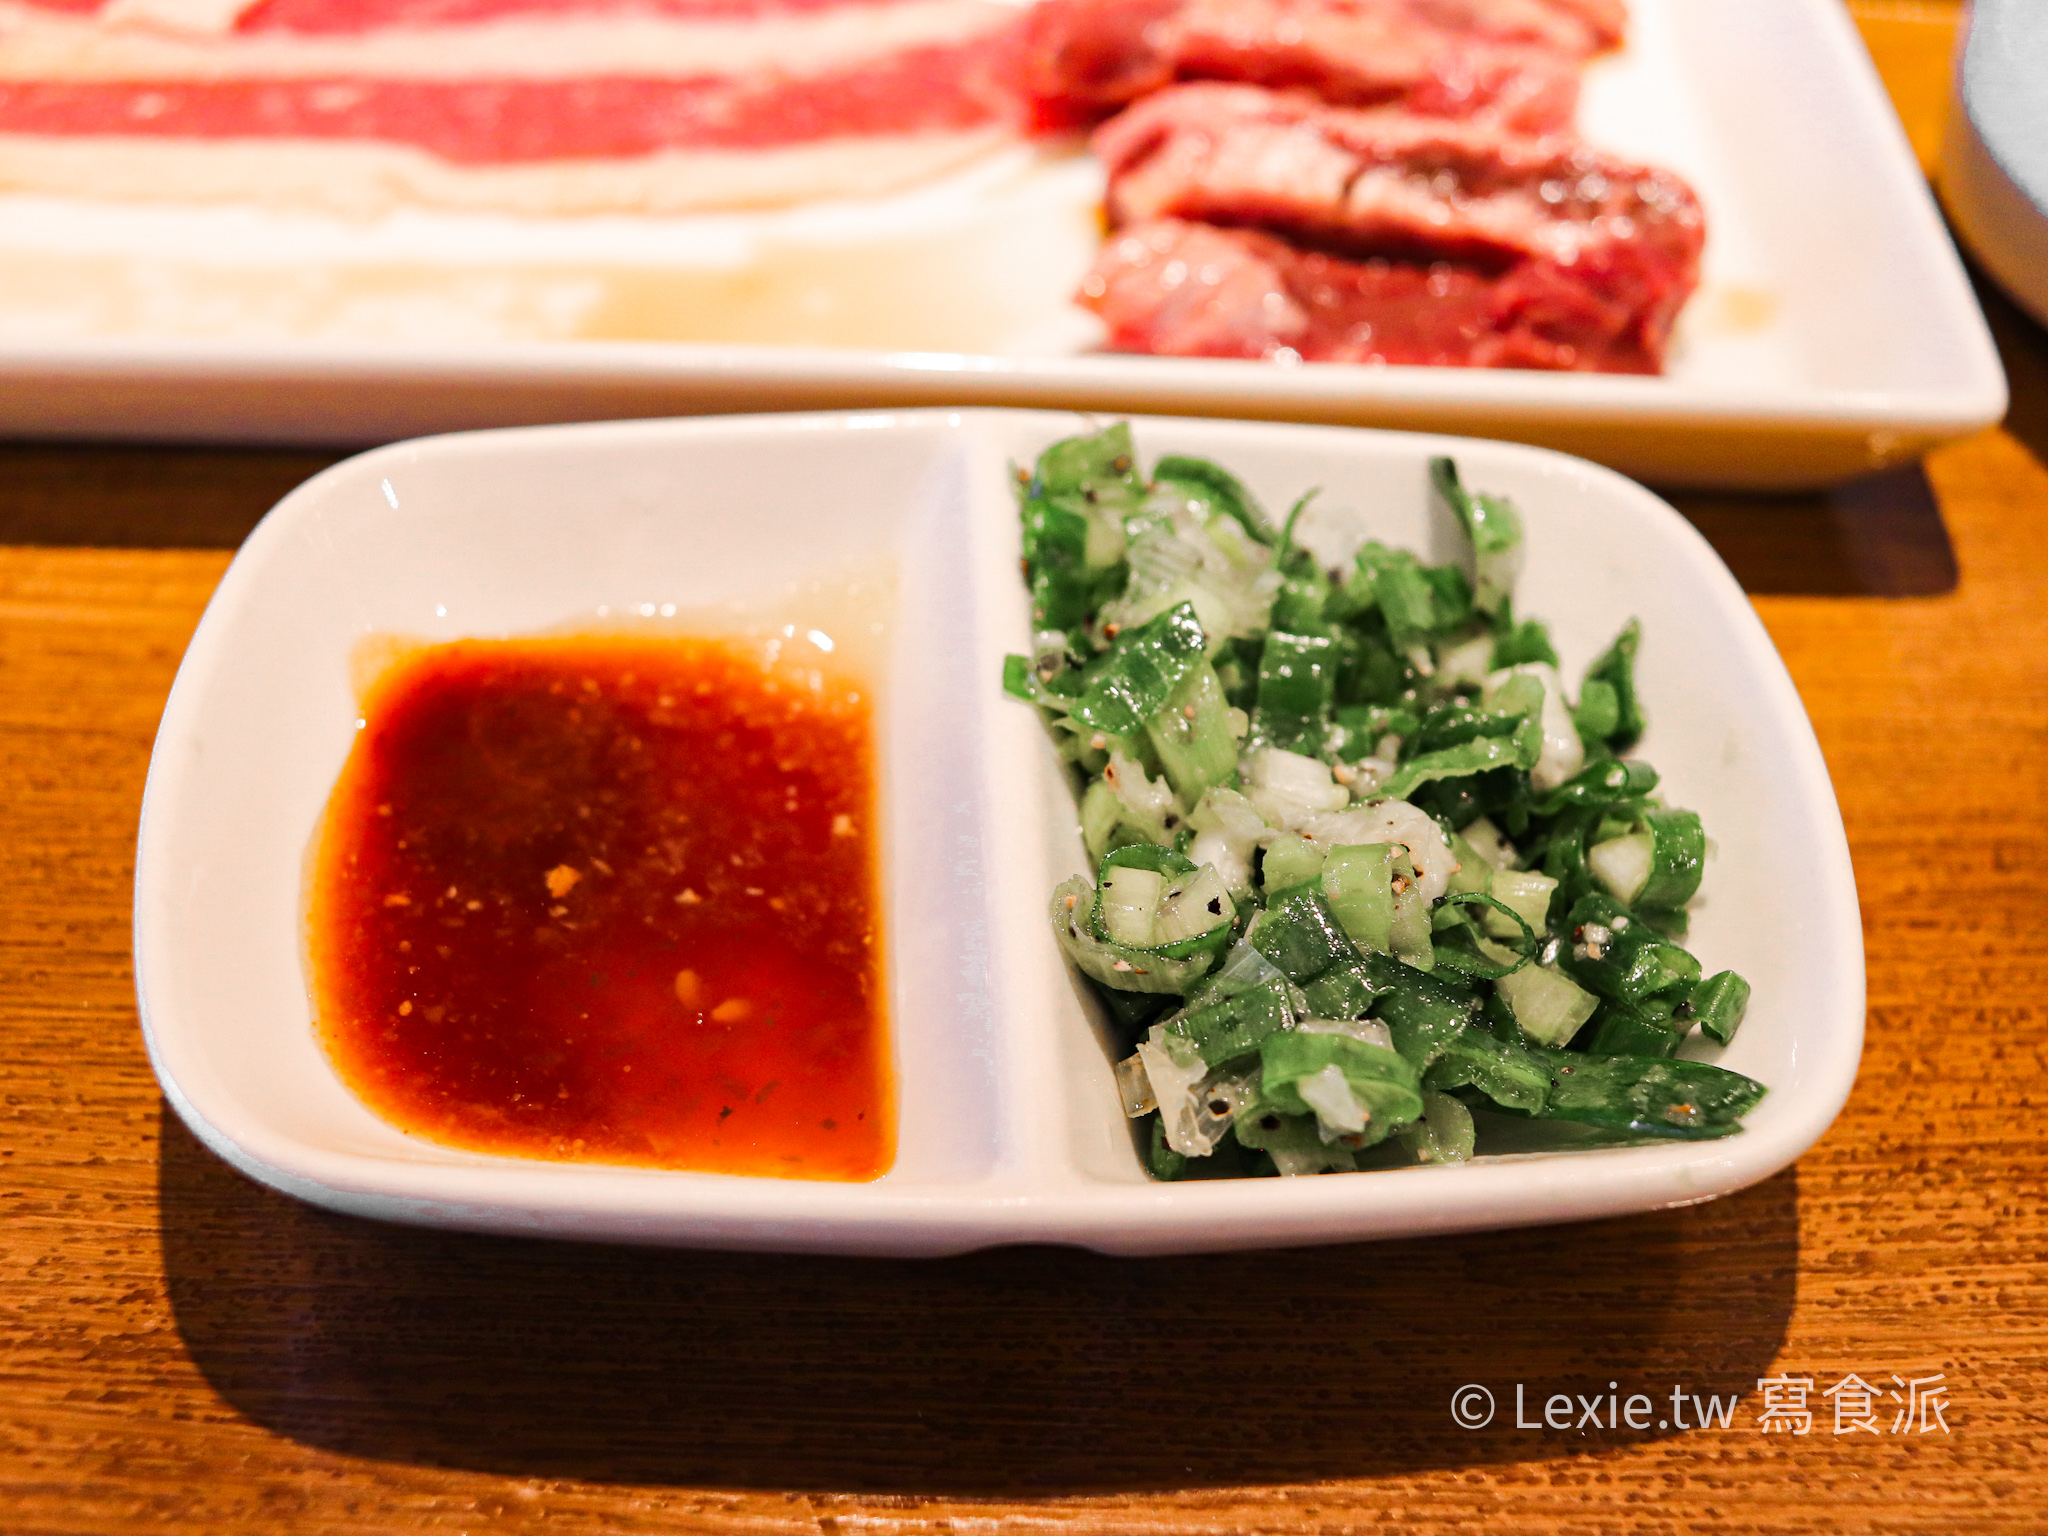 燒肉LIKE松江店一人也能吃燒肉，要確定耶?吃完蠻空虛的，價位也不低